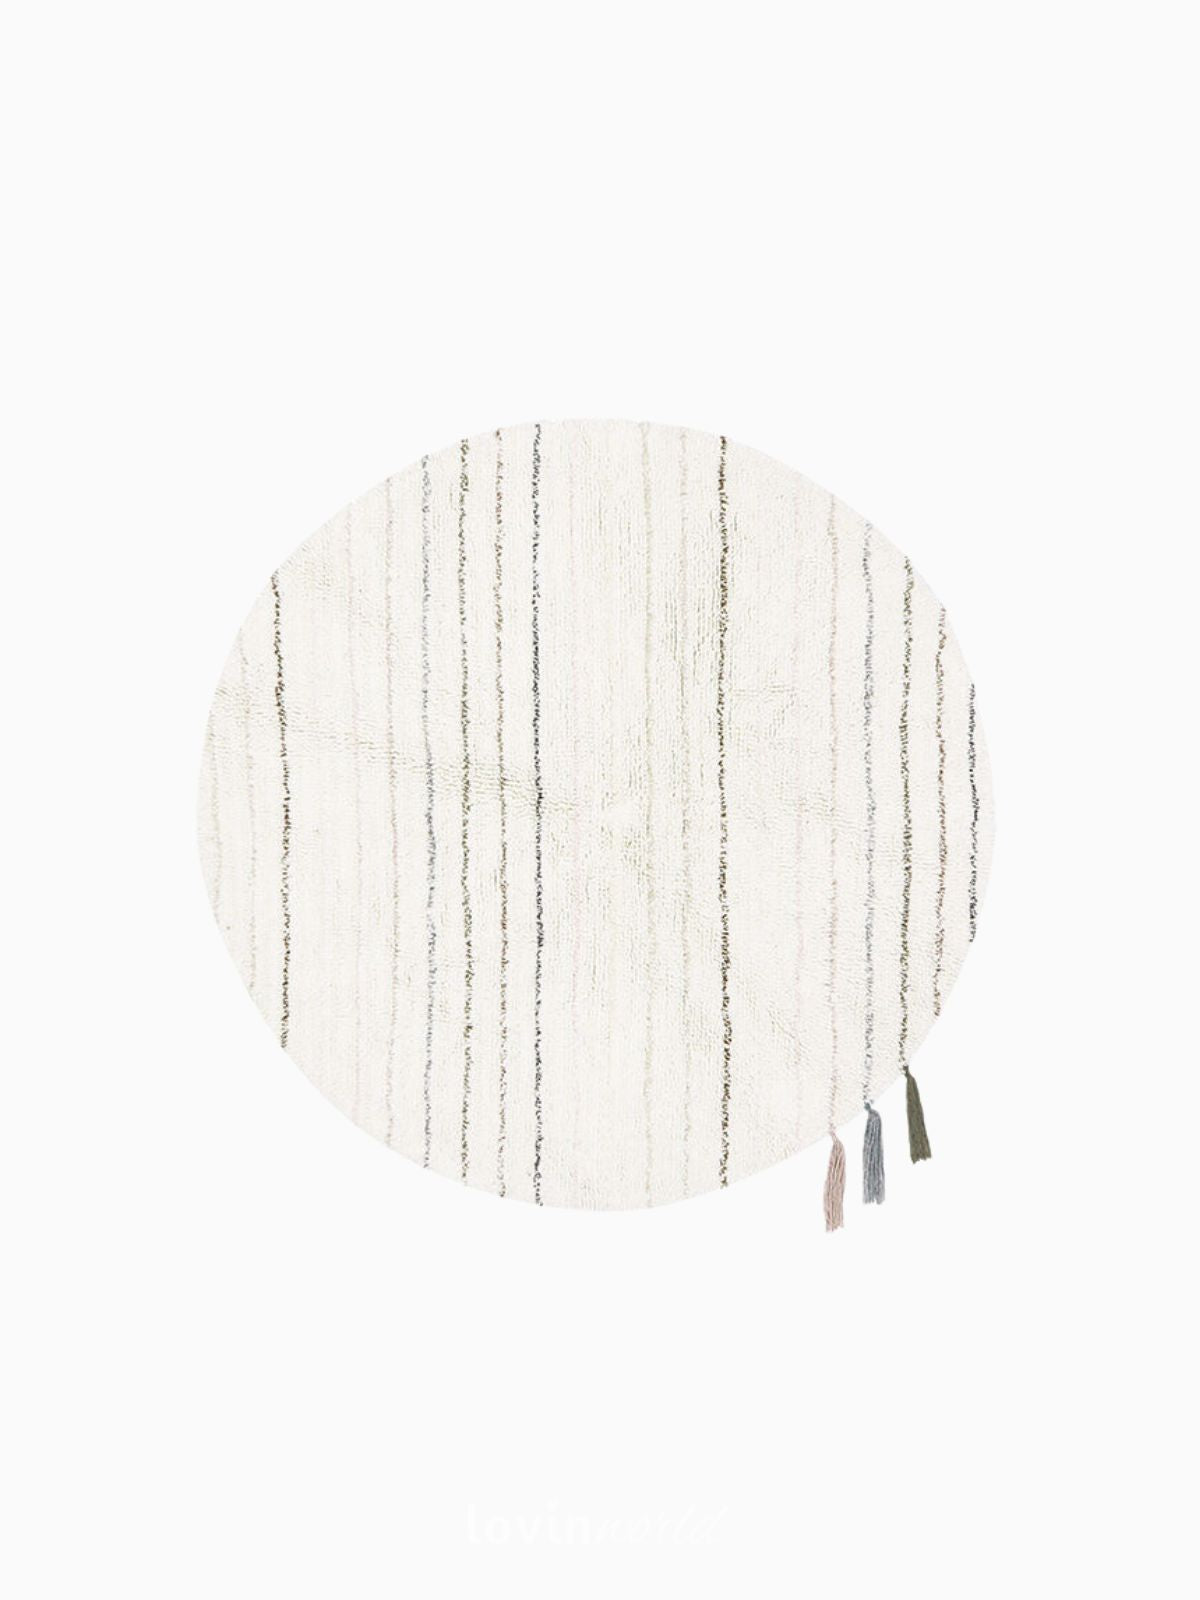 Tappeto rotondo per bambini Arona in lana, multicolore 120x120 cm.-1